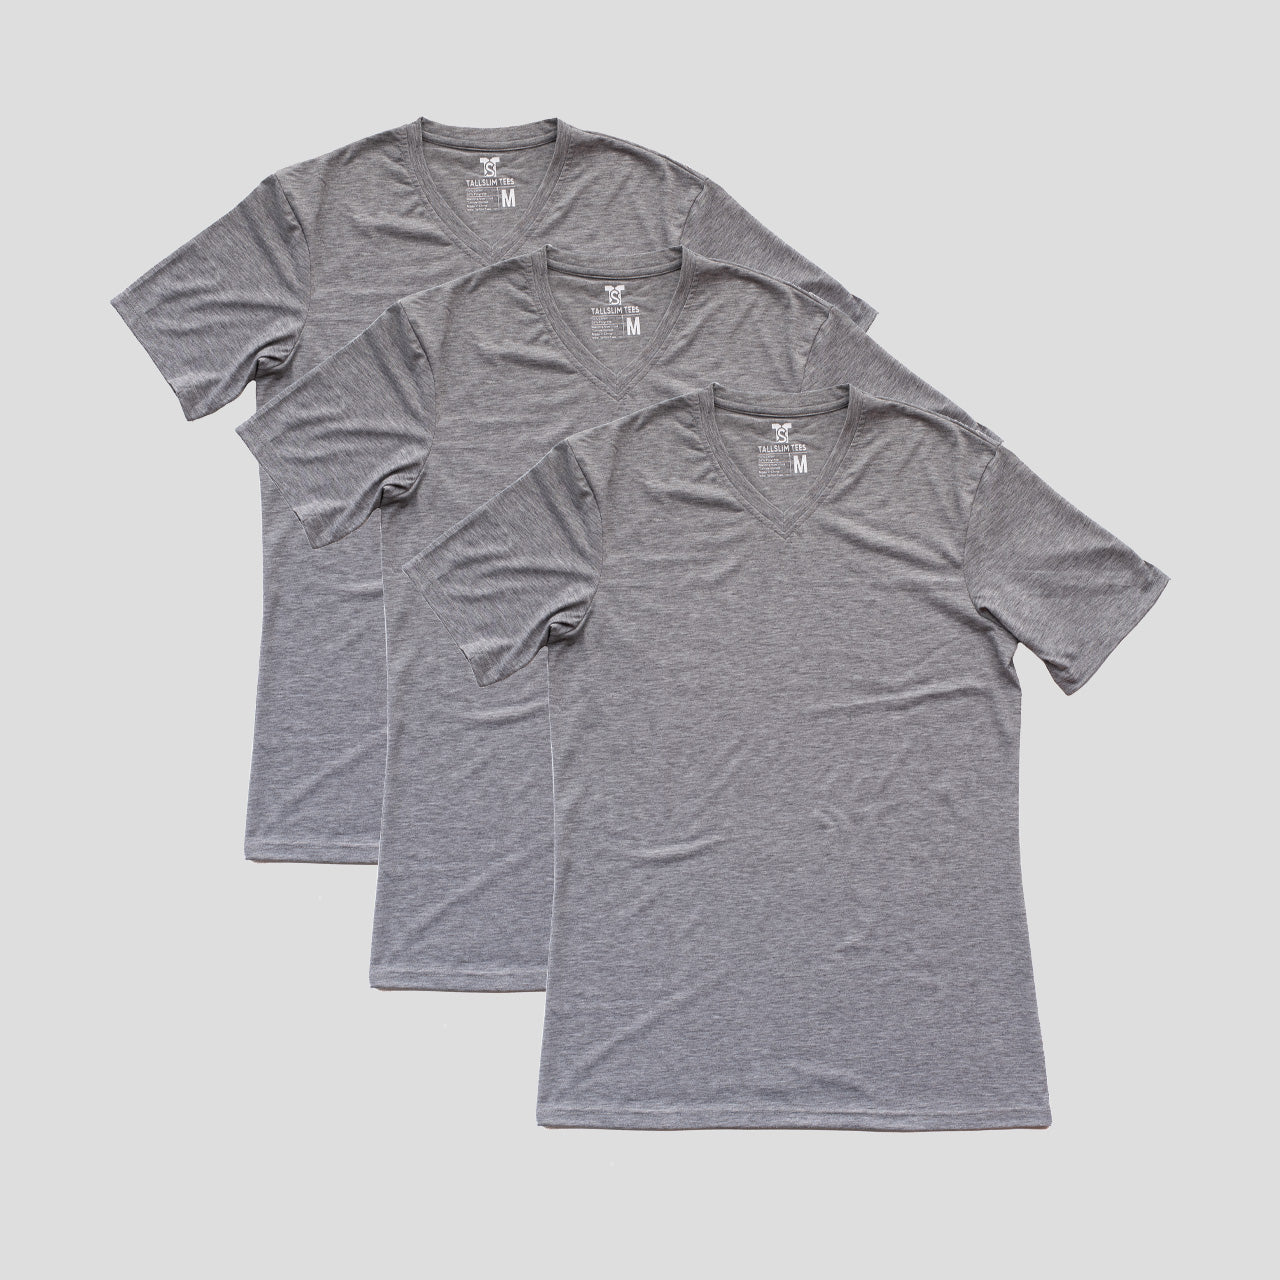 3 Pack - Light Gray V-Neck Shirt for Tall Slim Men